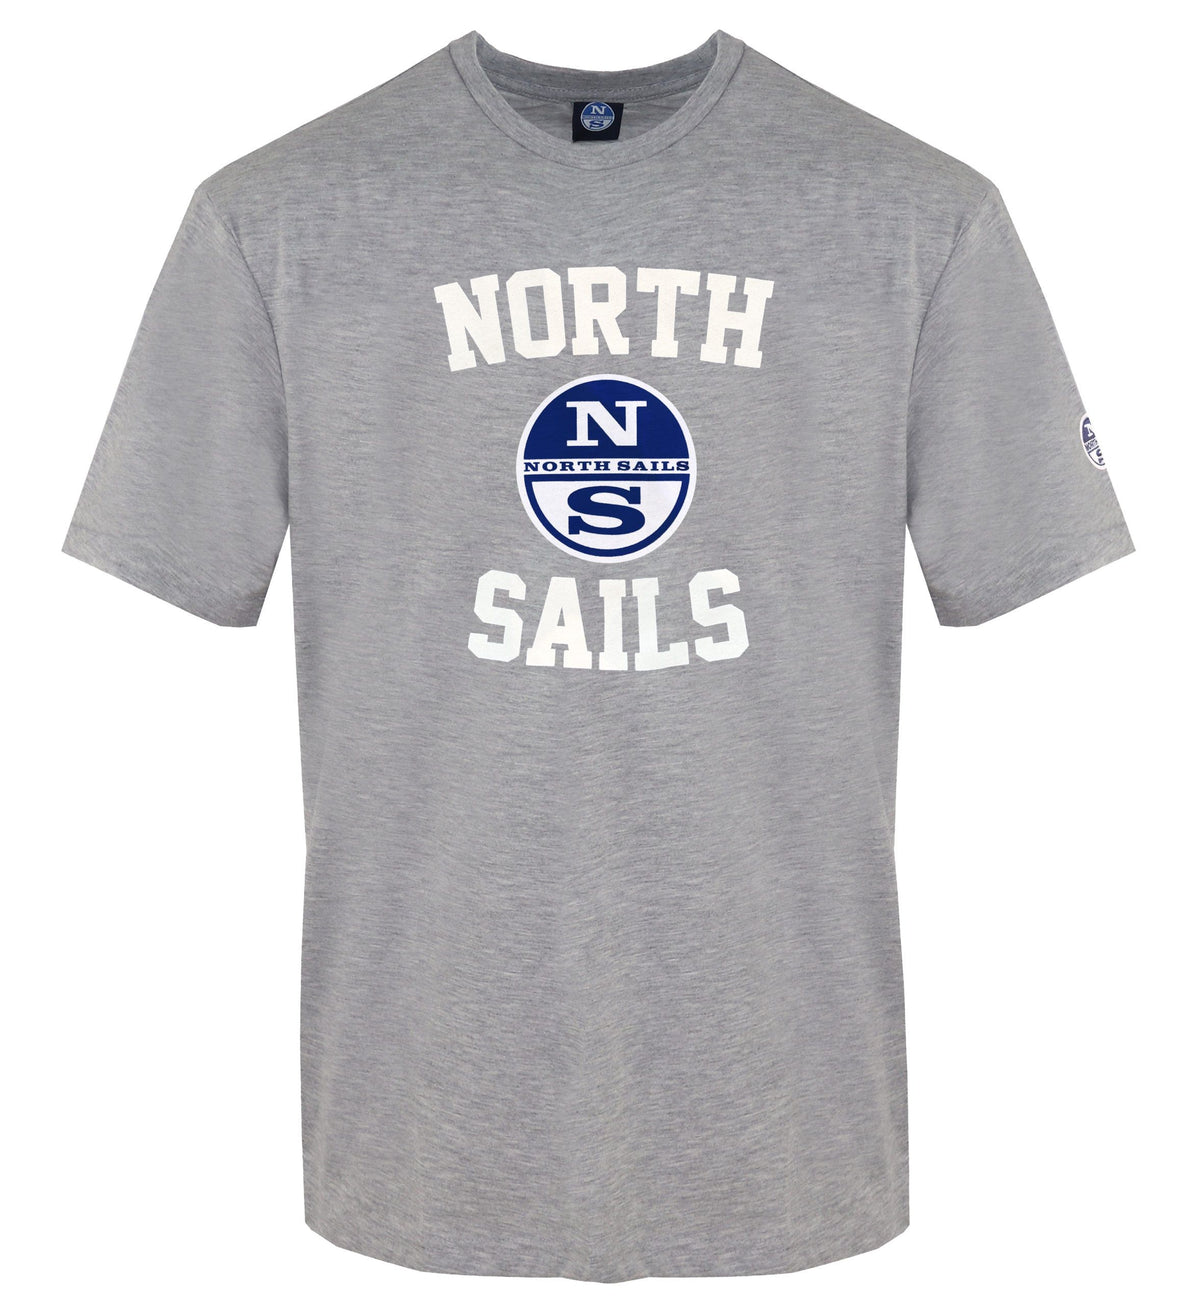 North Sails Sailor's Essence Gray Crewneck Men's T-Shirt